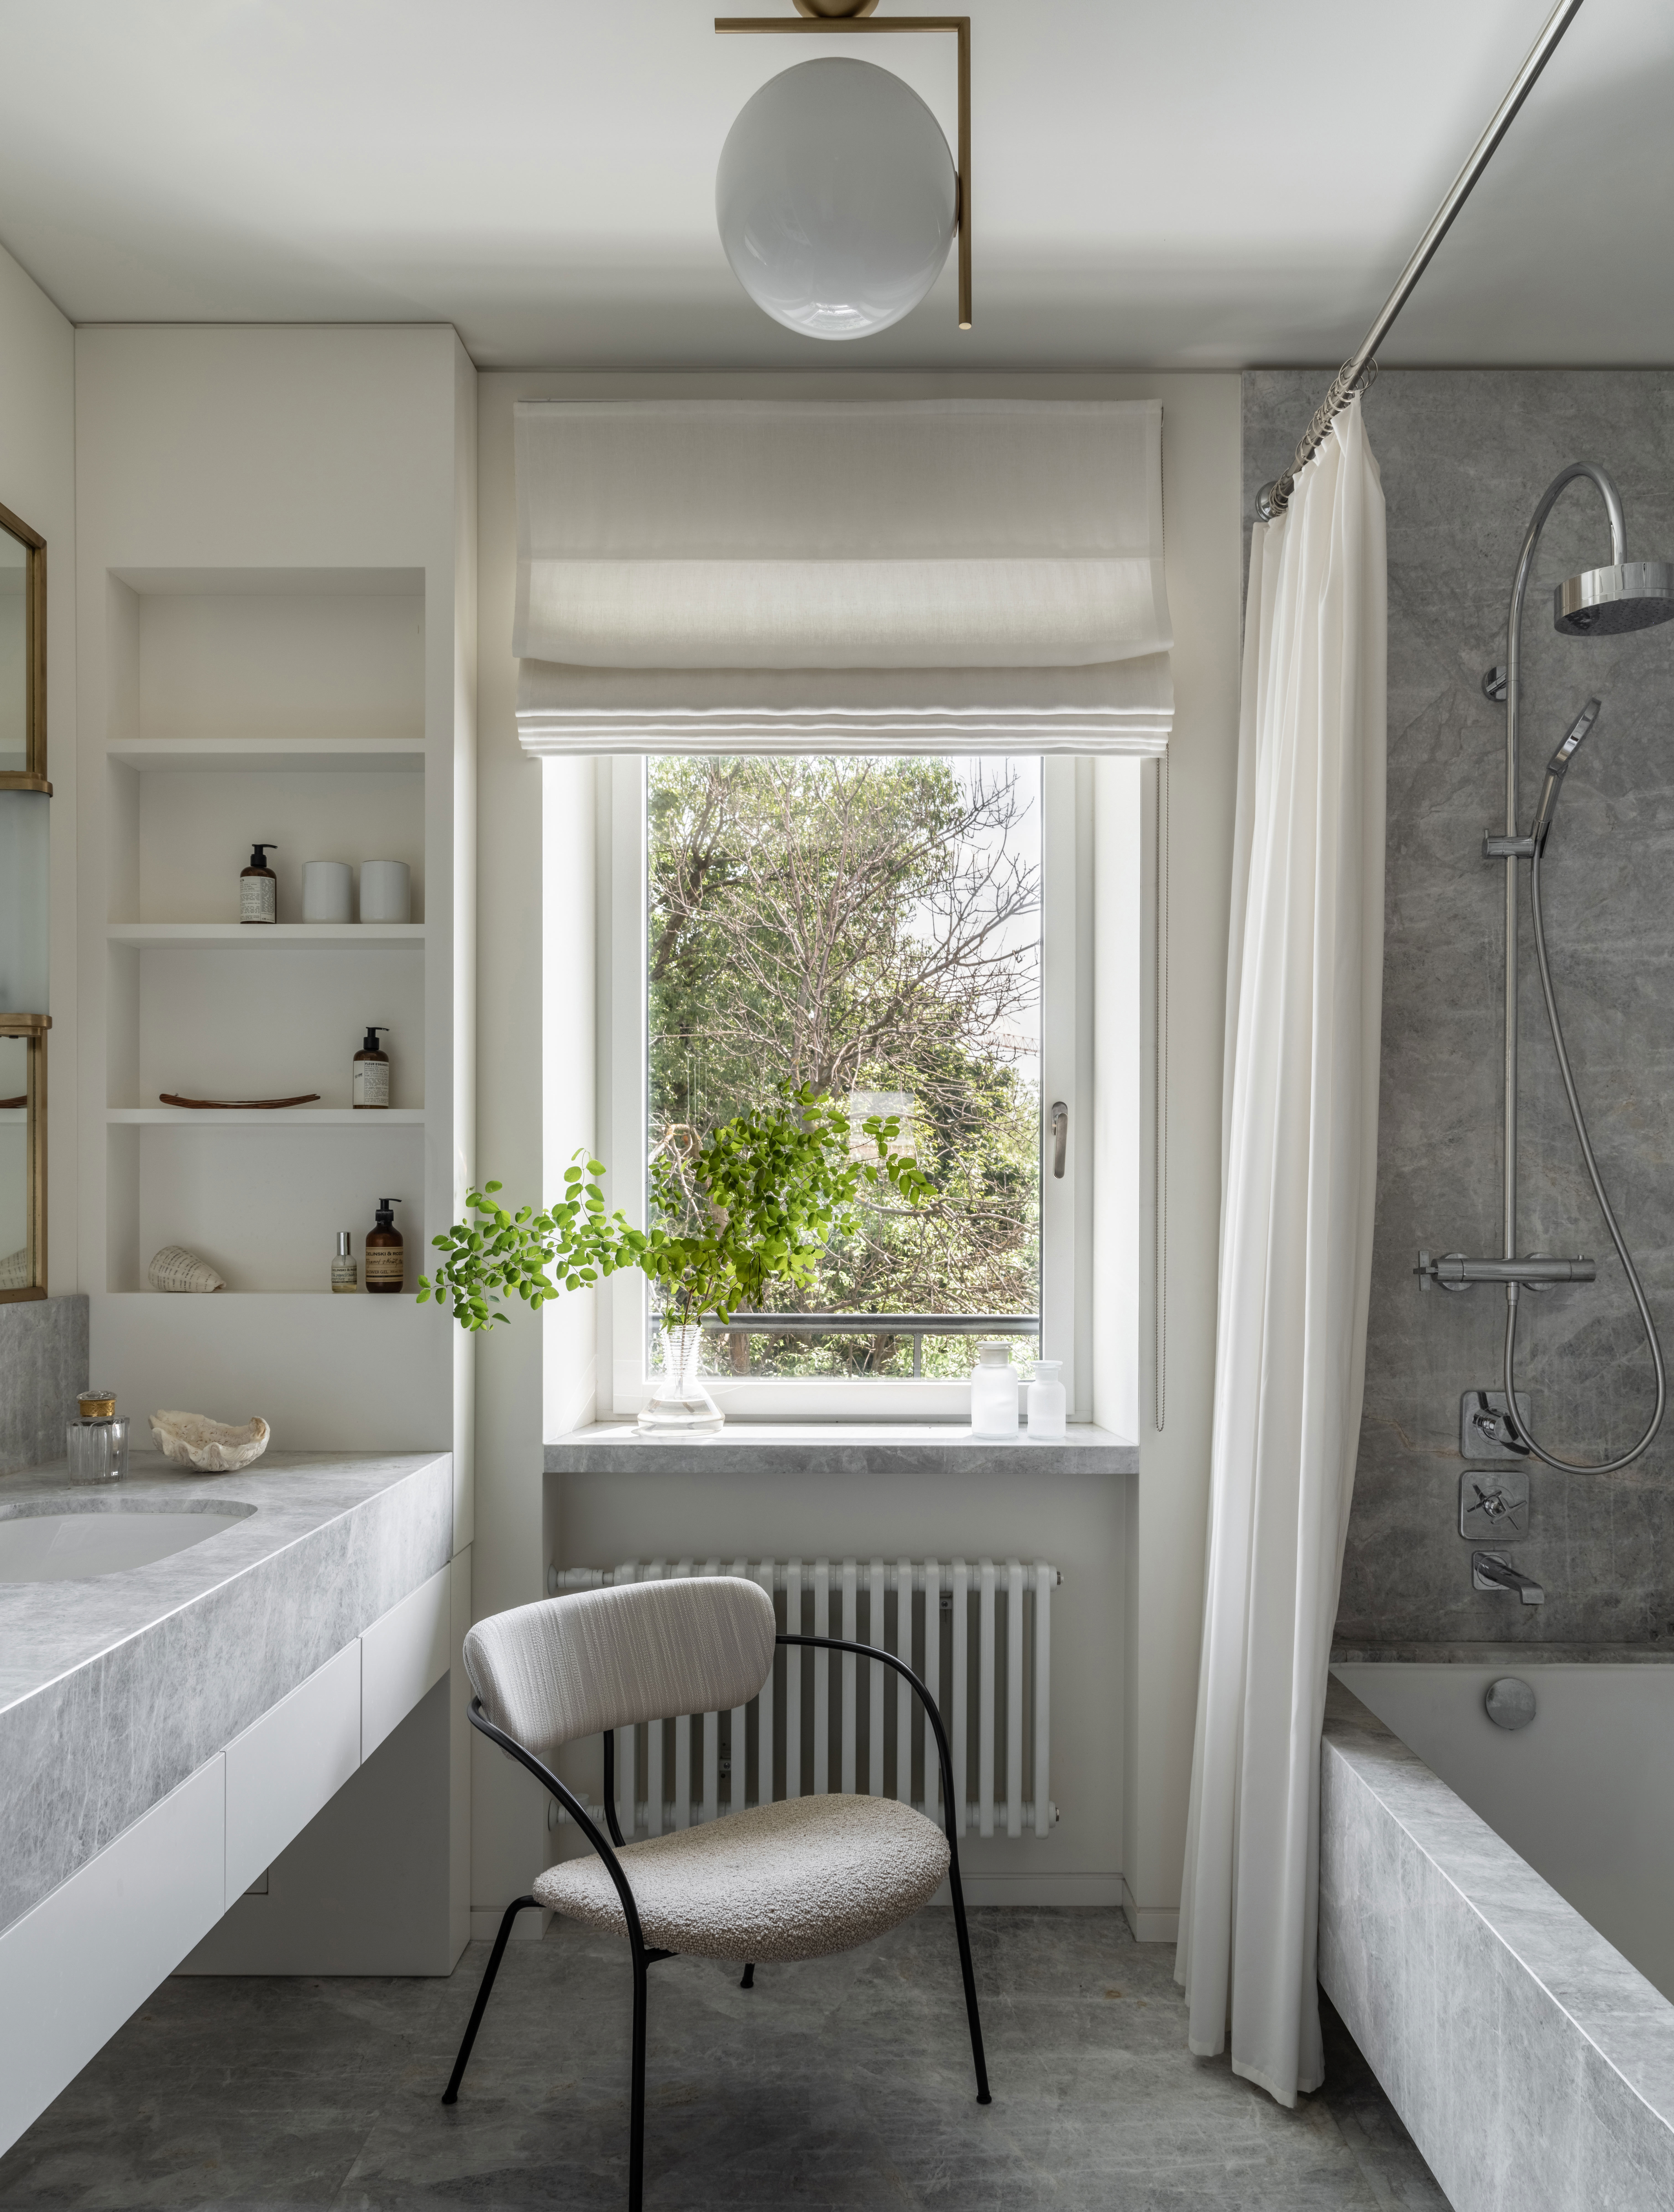 14 Grey Bathroom Ideas Modern Ways To, Grey Bathtub What Color For Walls